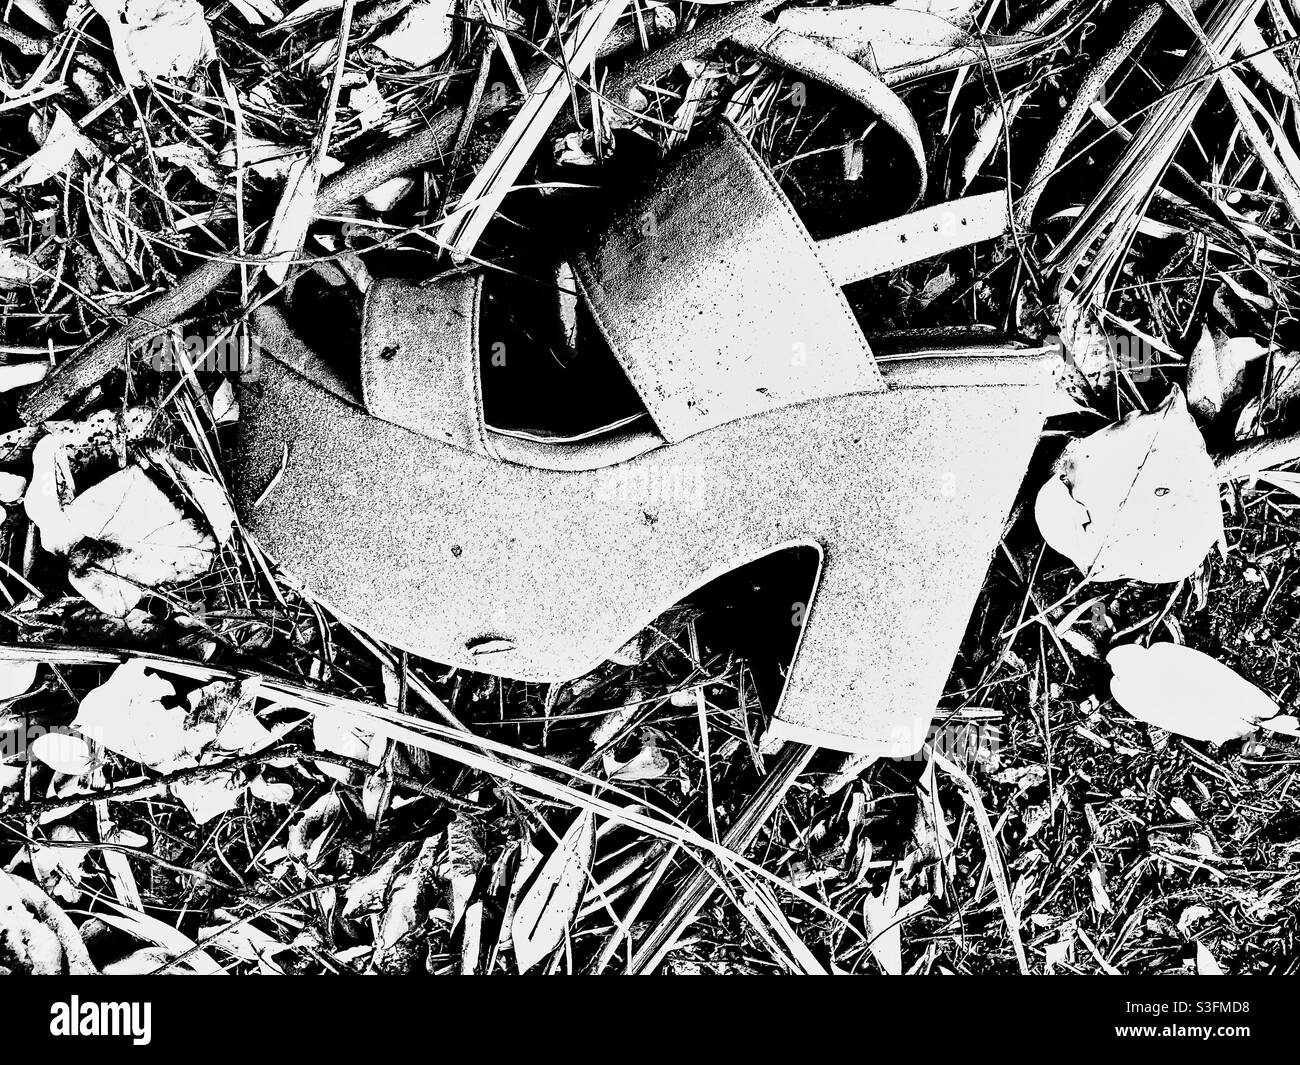 Feminine shoe abandoned on the ground Stock Photo